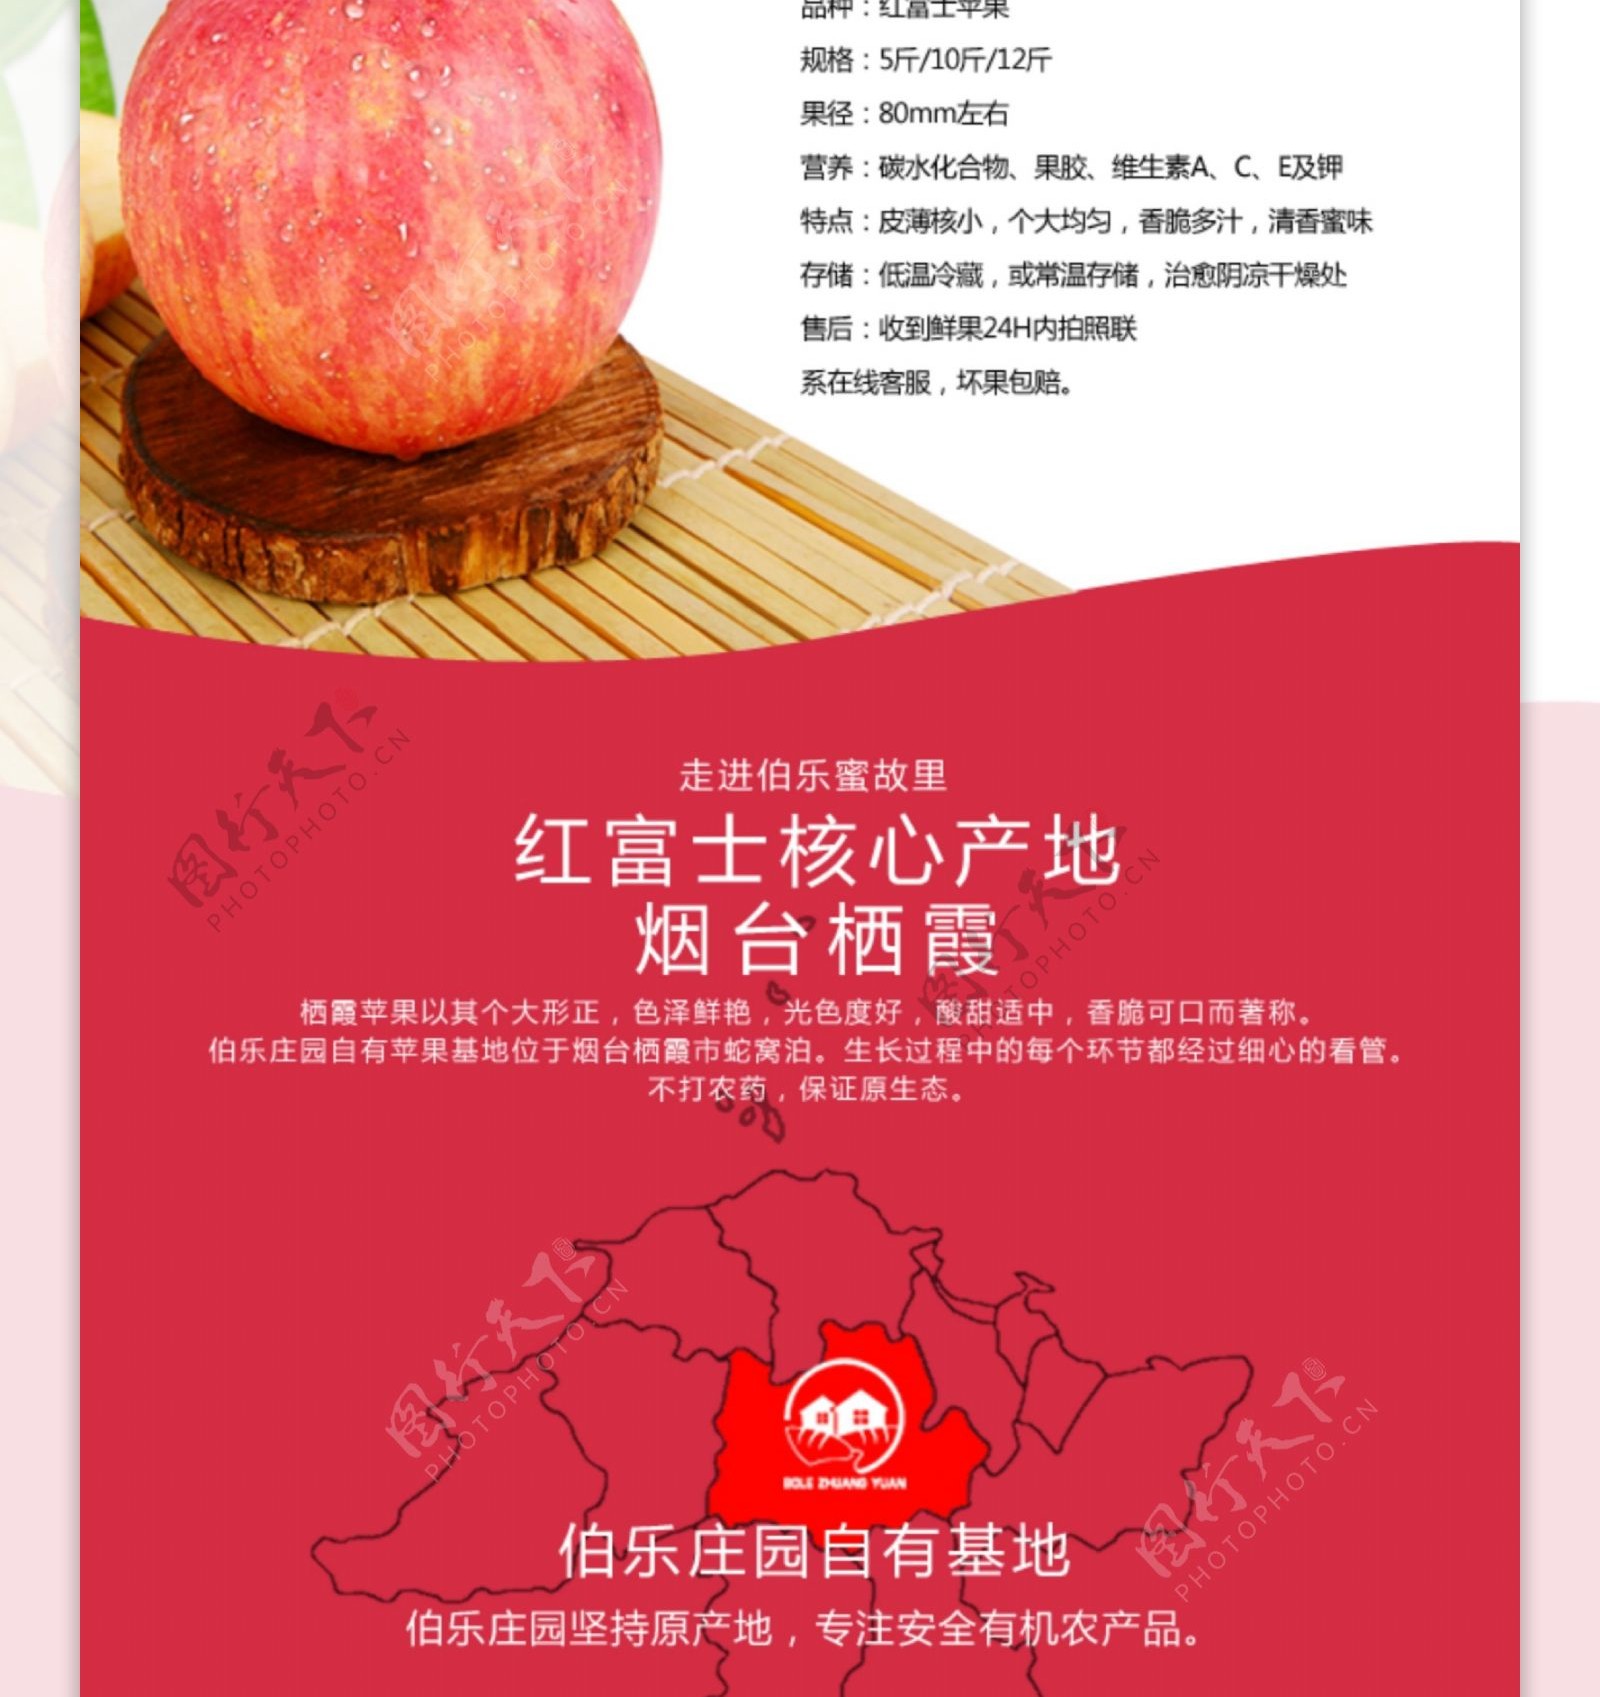 苹果详情页淘宝设计红富士栖霞苹果